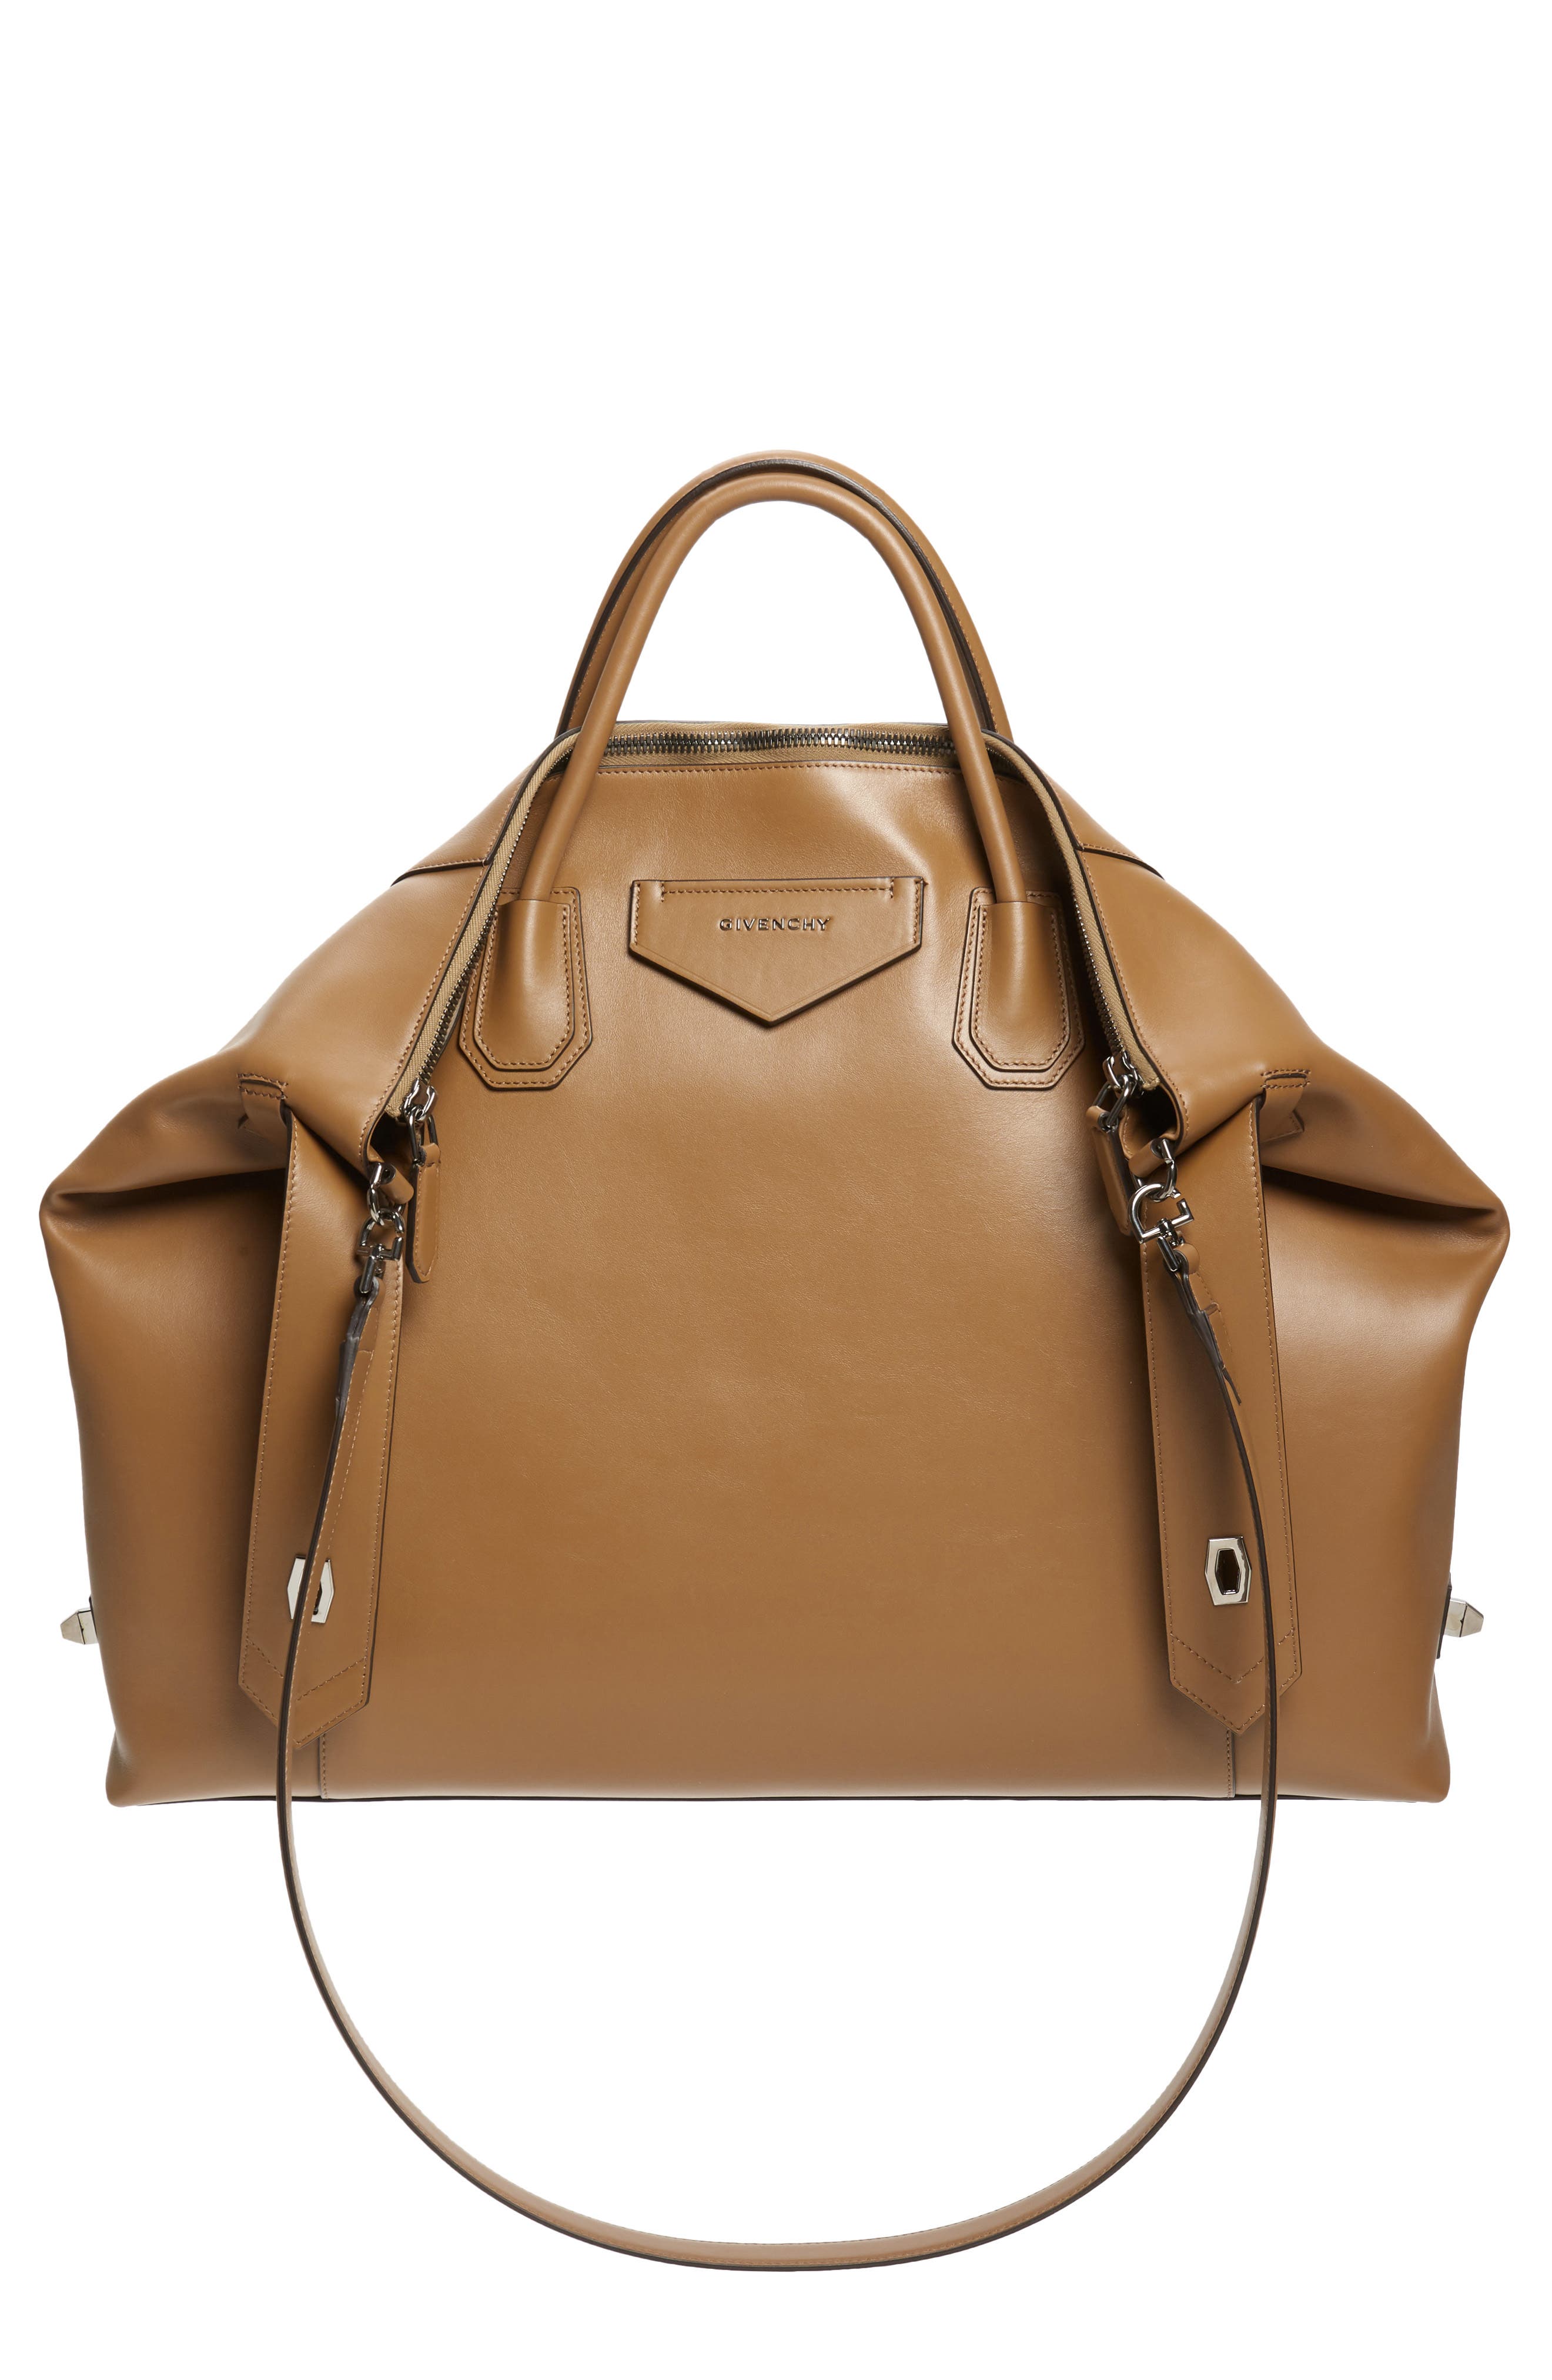 givenchy women's handbags